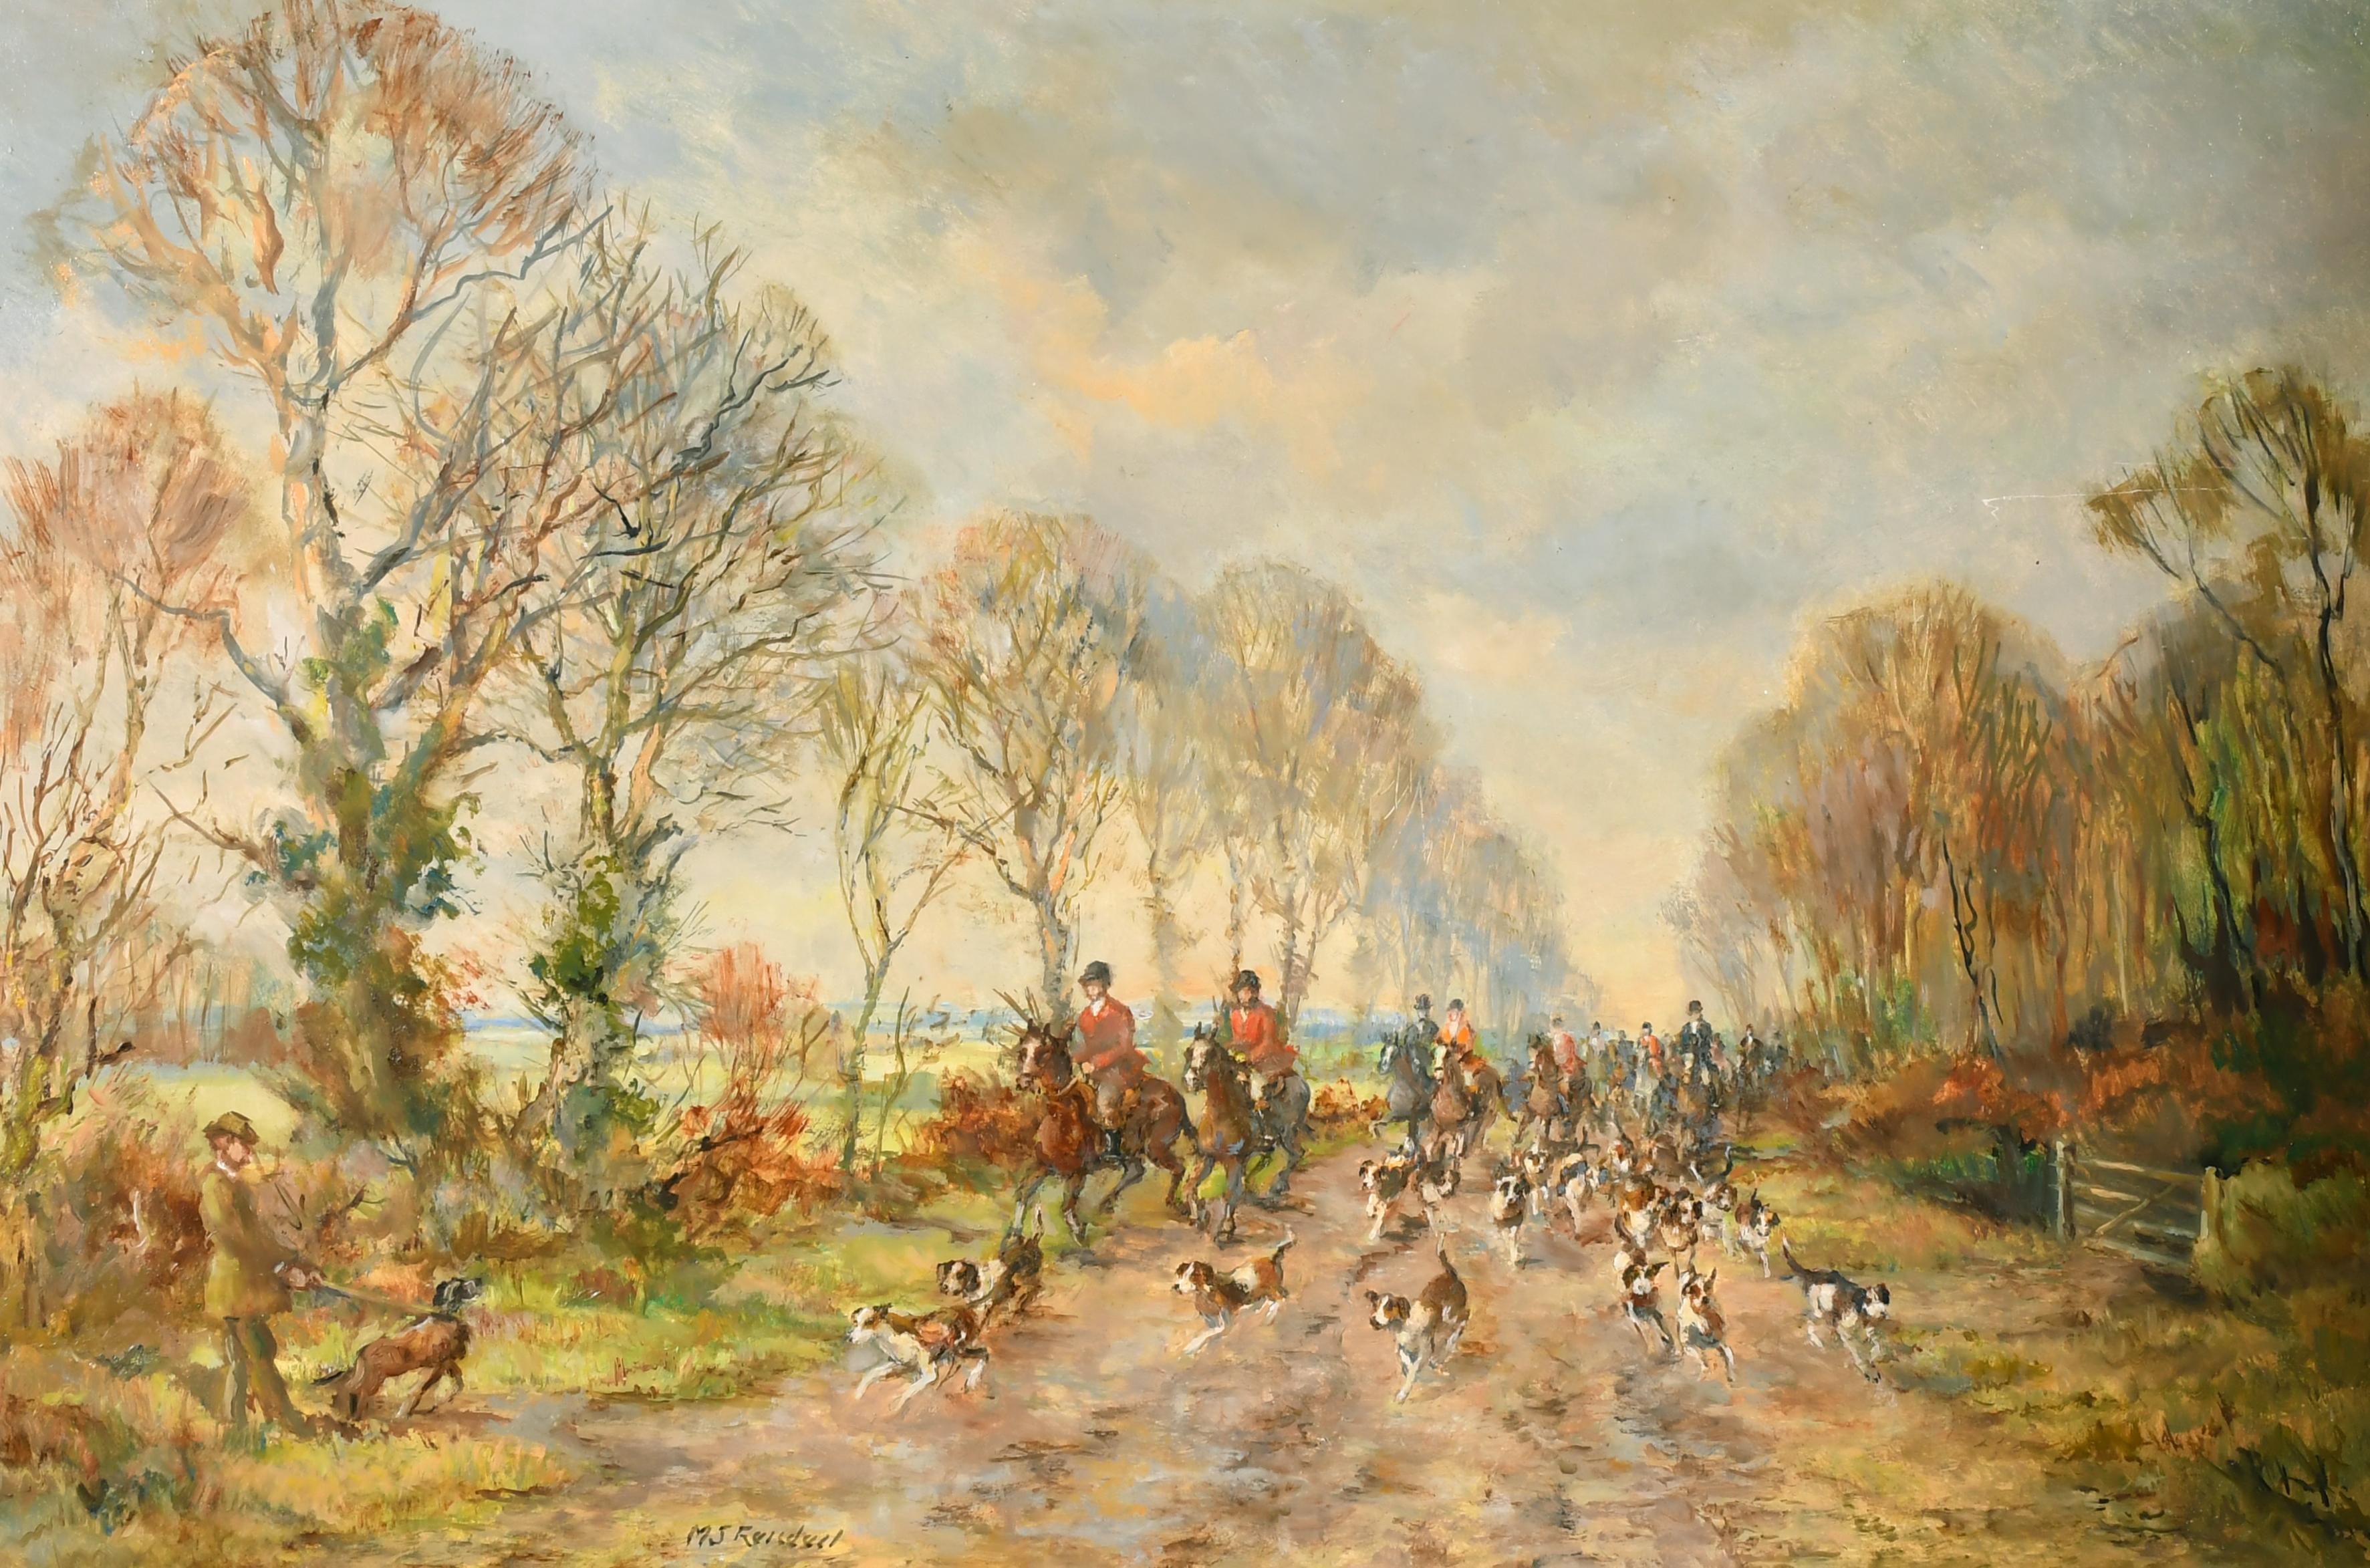 Figurative Painting M.J Ruisadael - Grande peinture à l'huile signée représentant une fête de chasse à cheval avec chiens